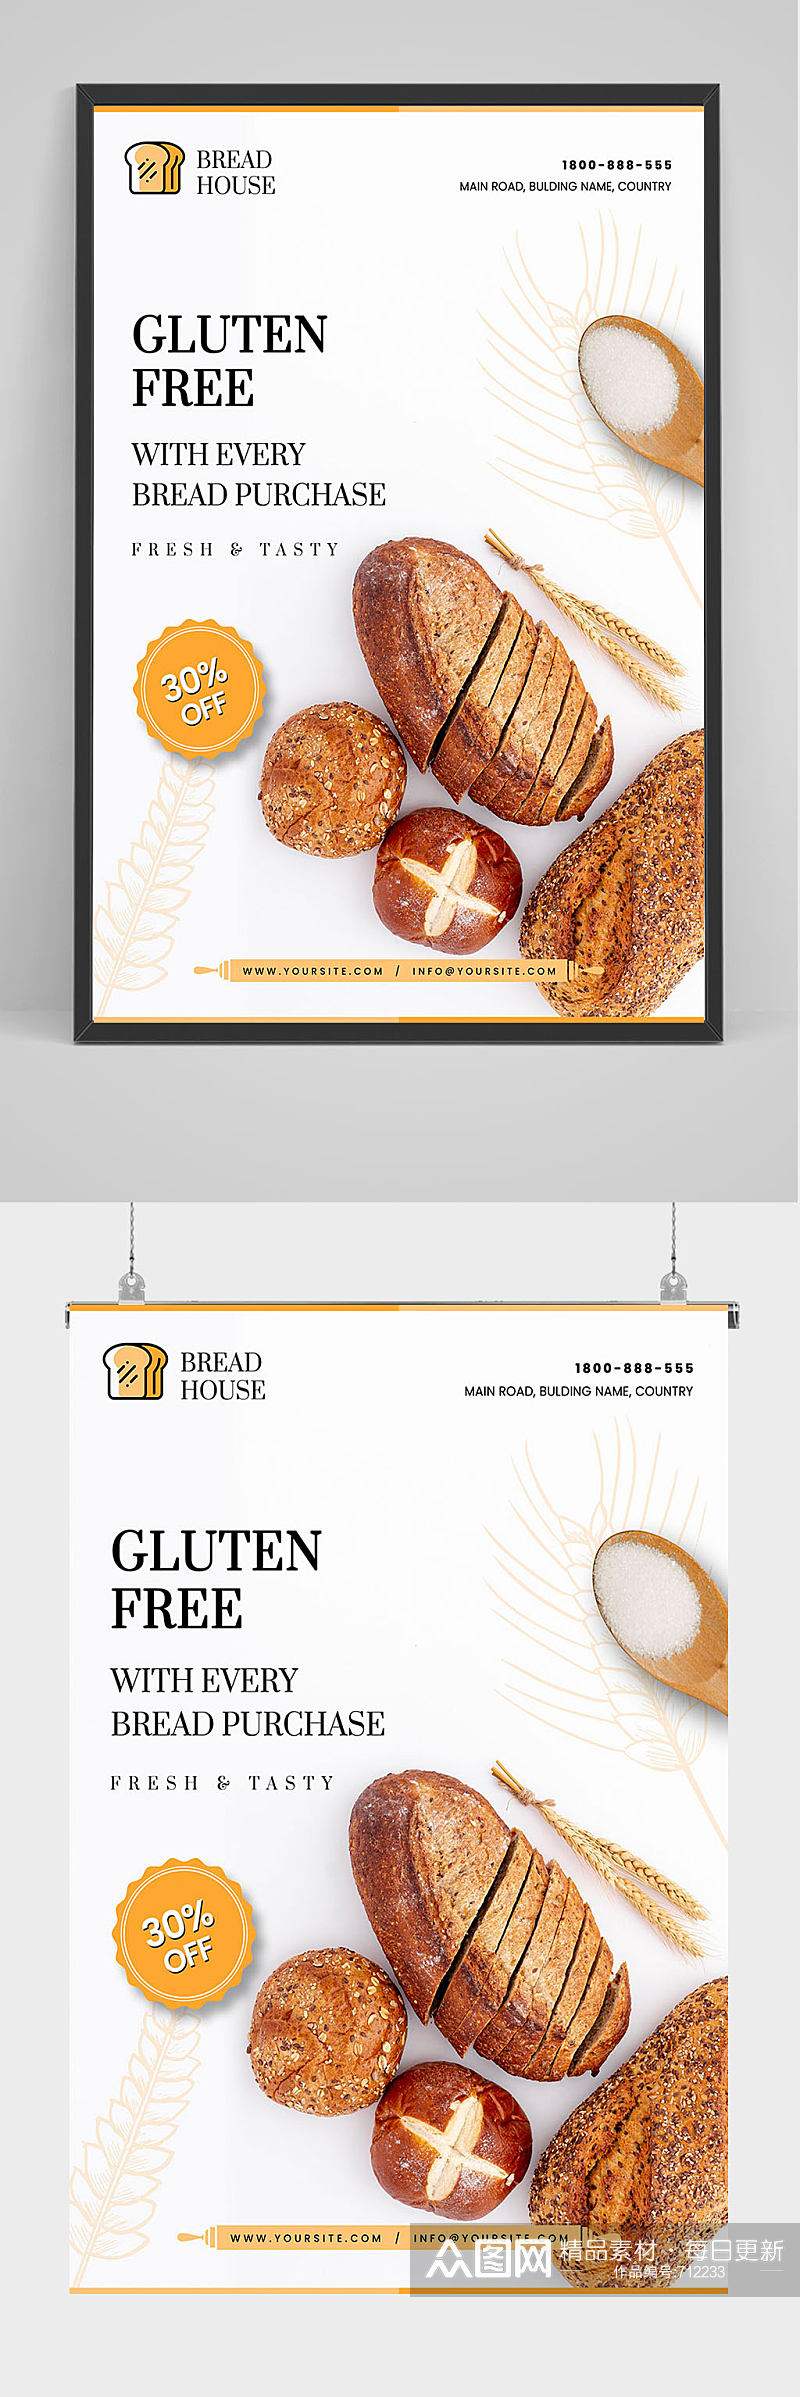 精品面包促销海报设计素材